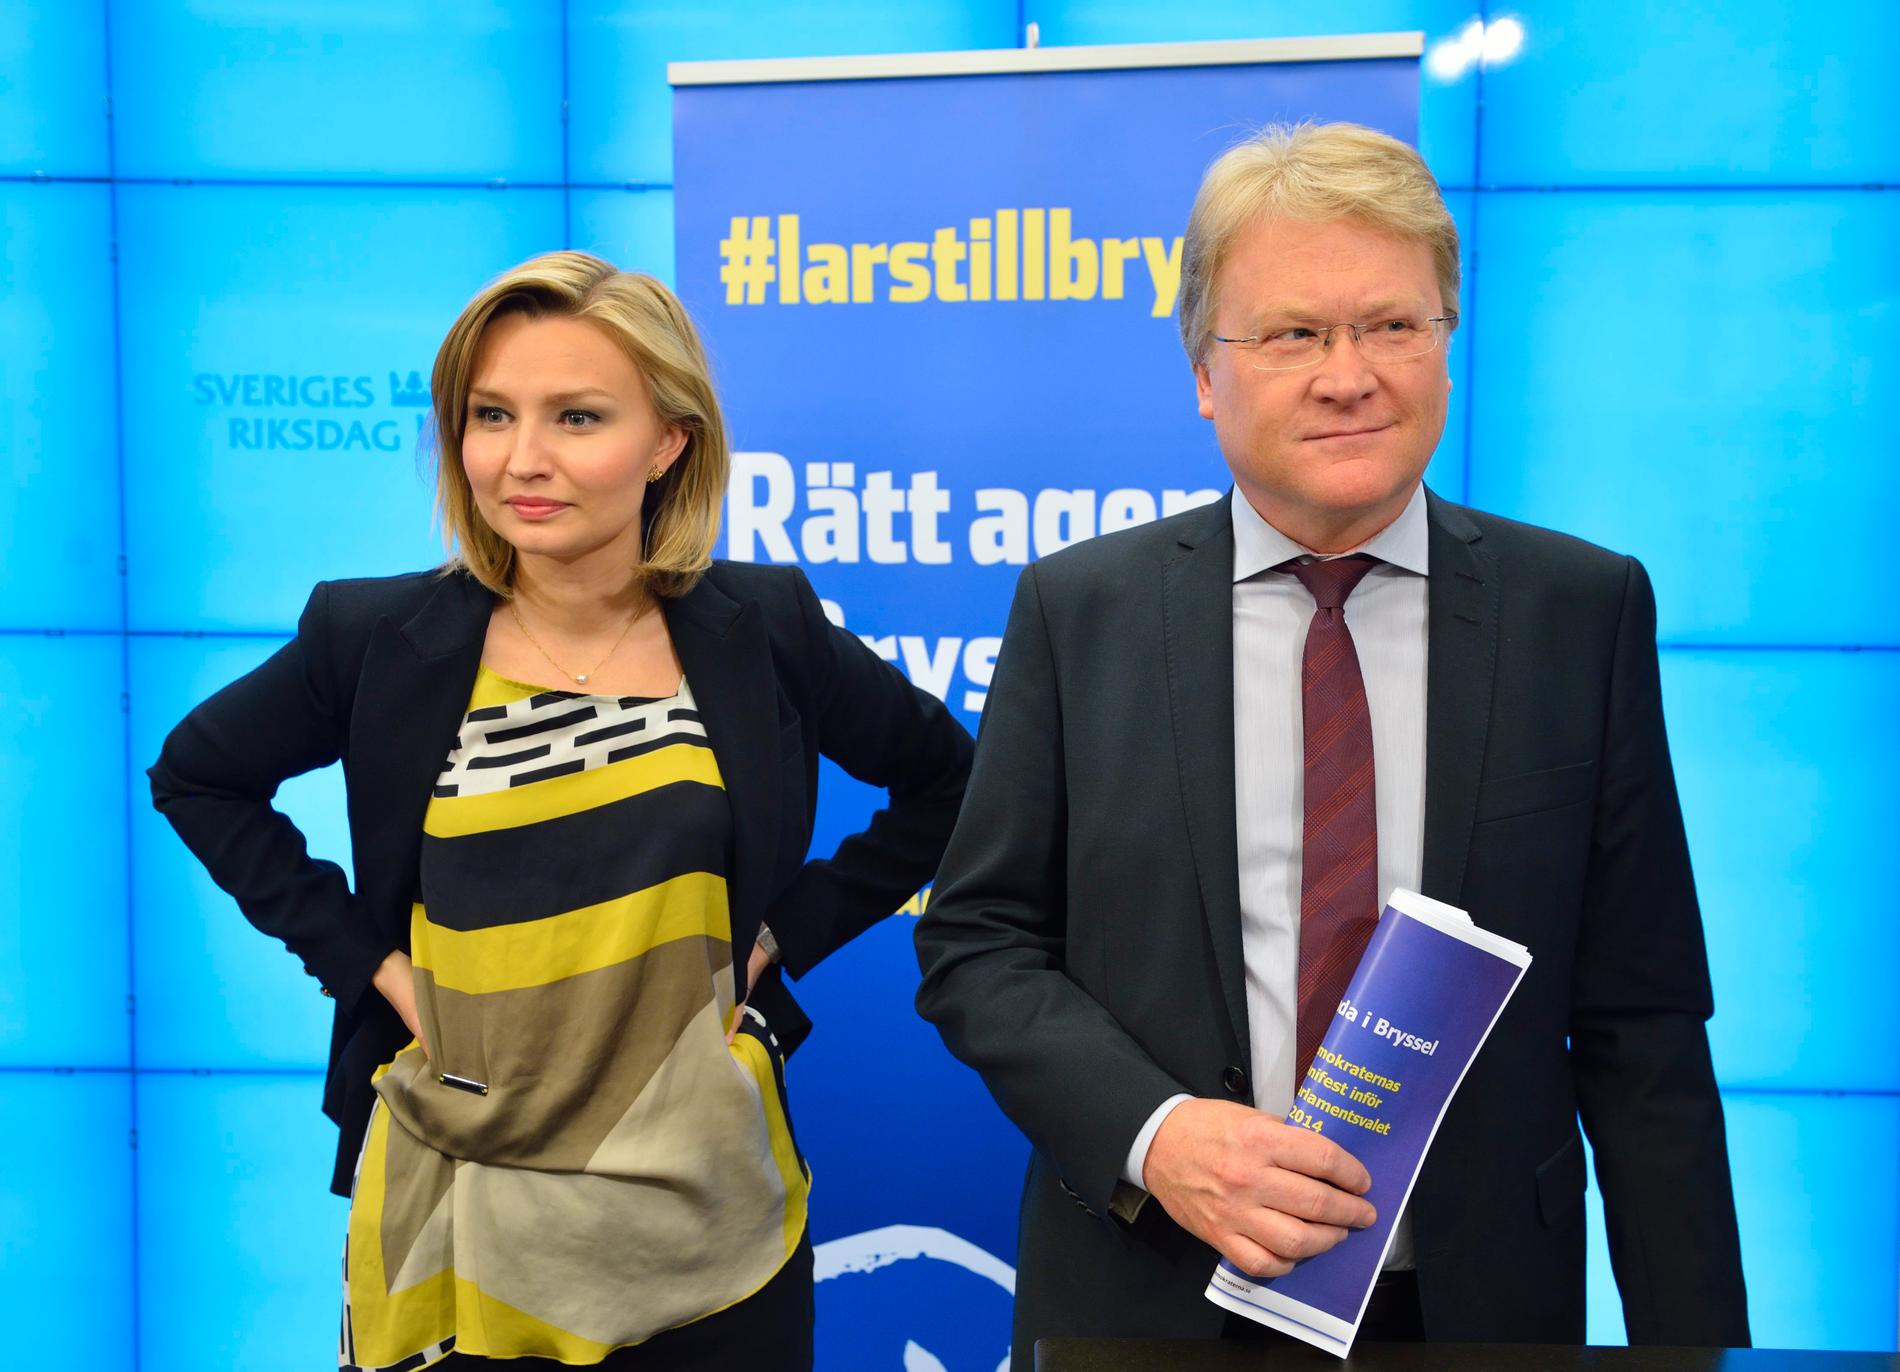 Lars Adaktussons röstande i abortfrågor under sin tid i EU-parlamentet har väckt kritik. KD-ledaren Ebba Busch Thor hävdar dock att Adaktusson inte är abortmotståndare. Arkivbild.